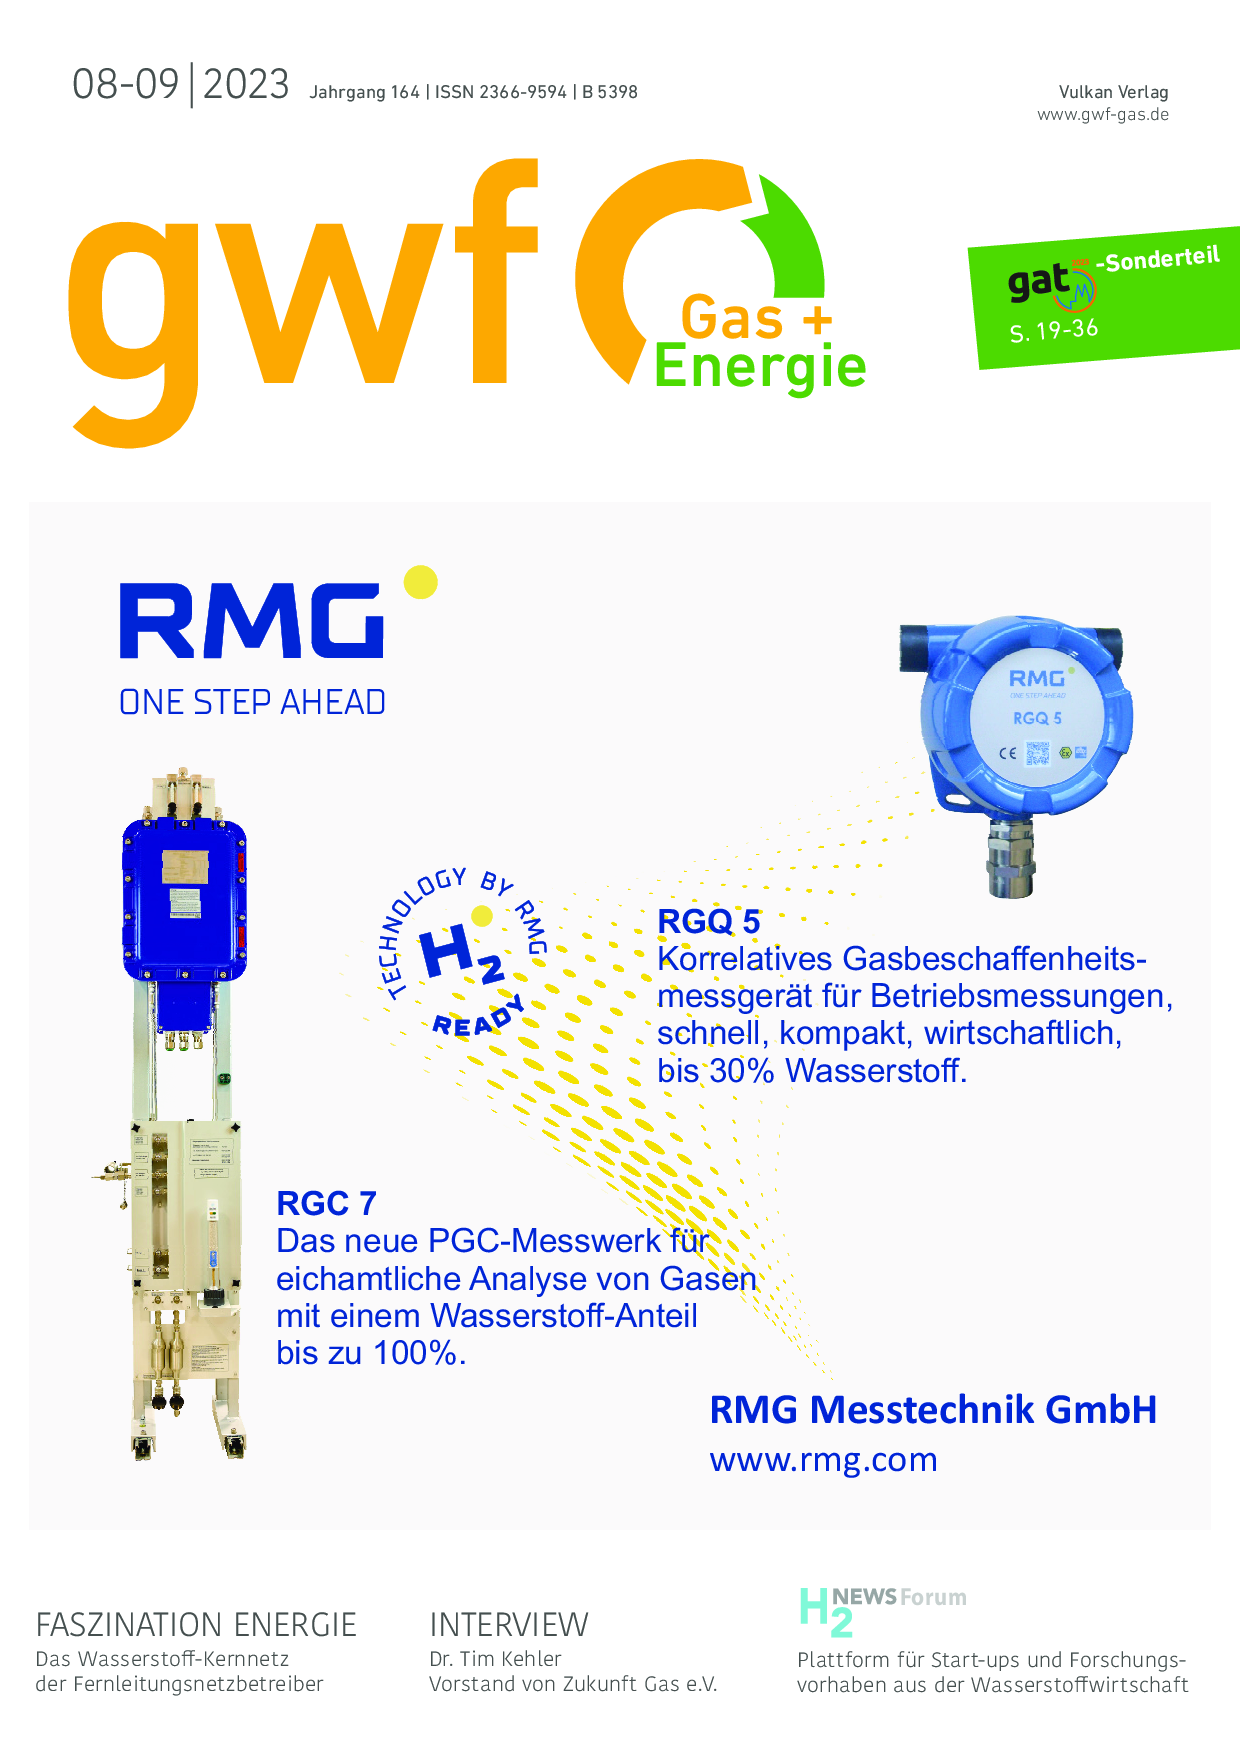 gwf Gas+Energie – 08-09 2023